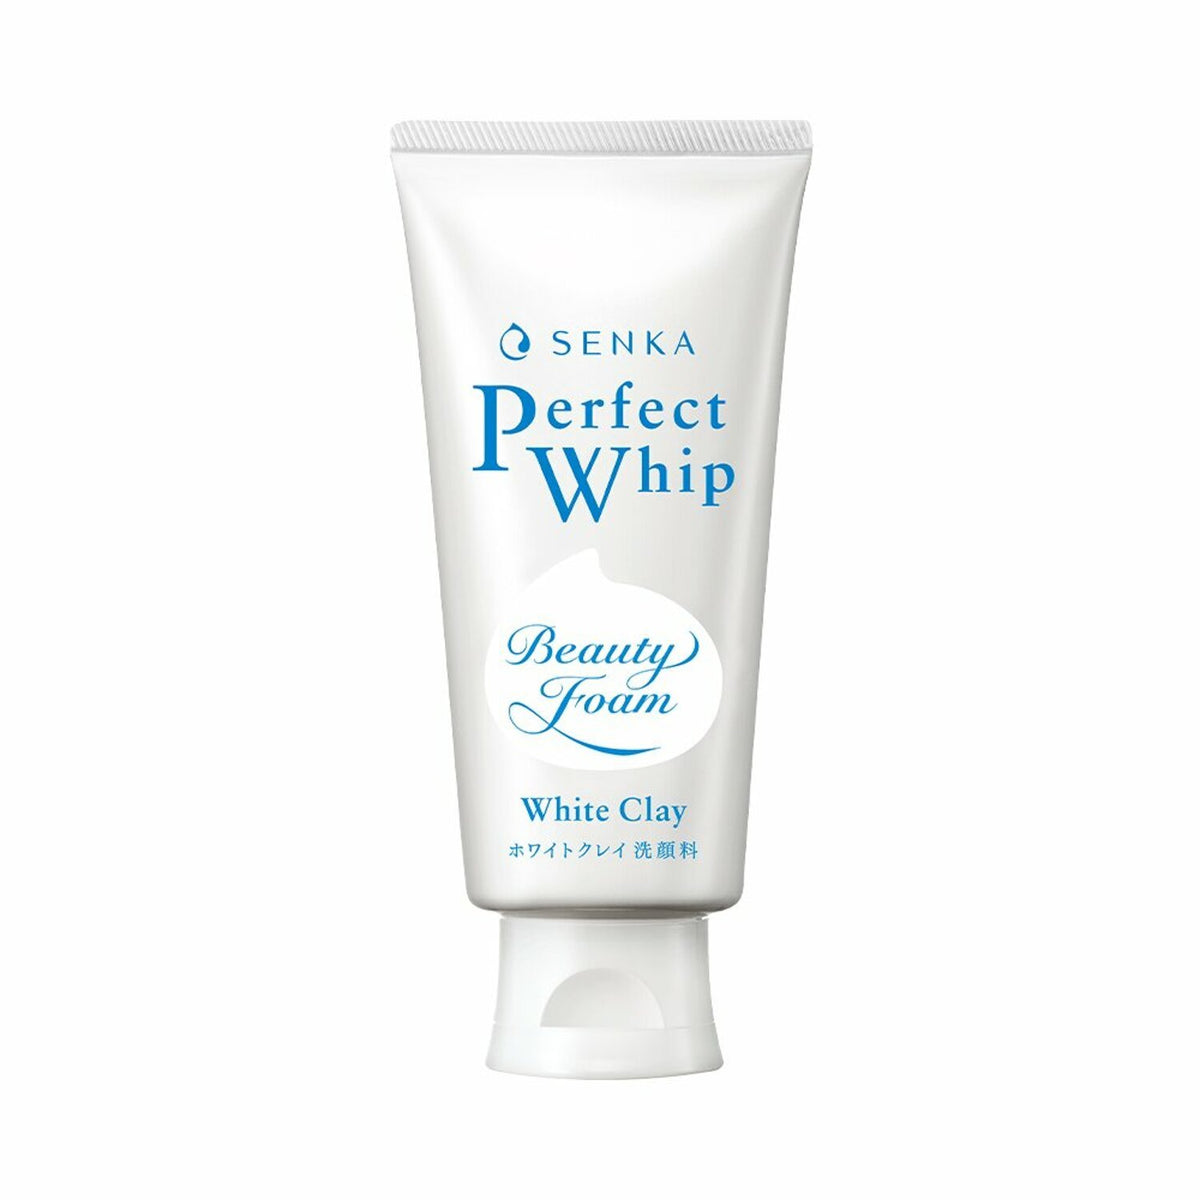 Shiseido Senka Perfect Whip White Clay Pore Cleanser 120g – Japanese Taste